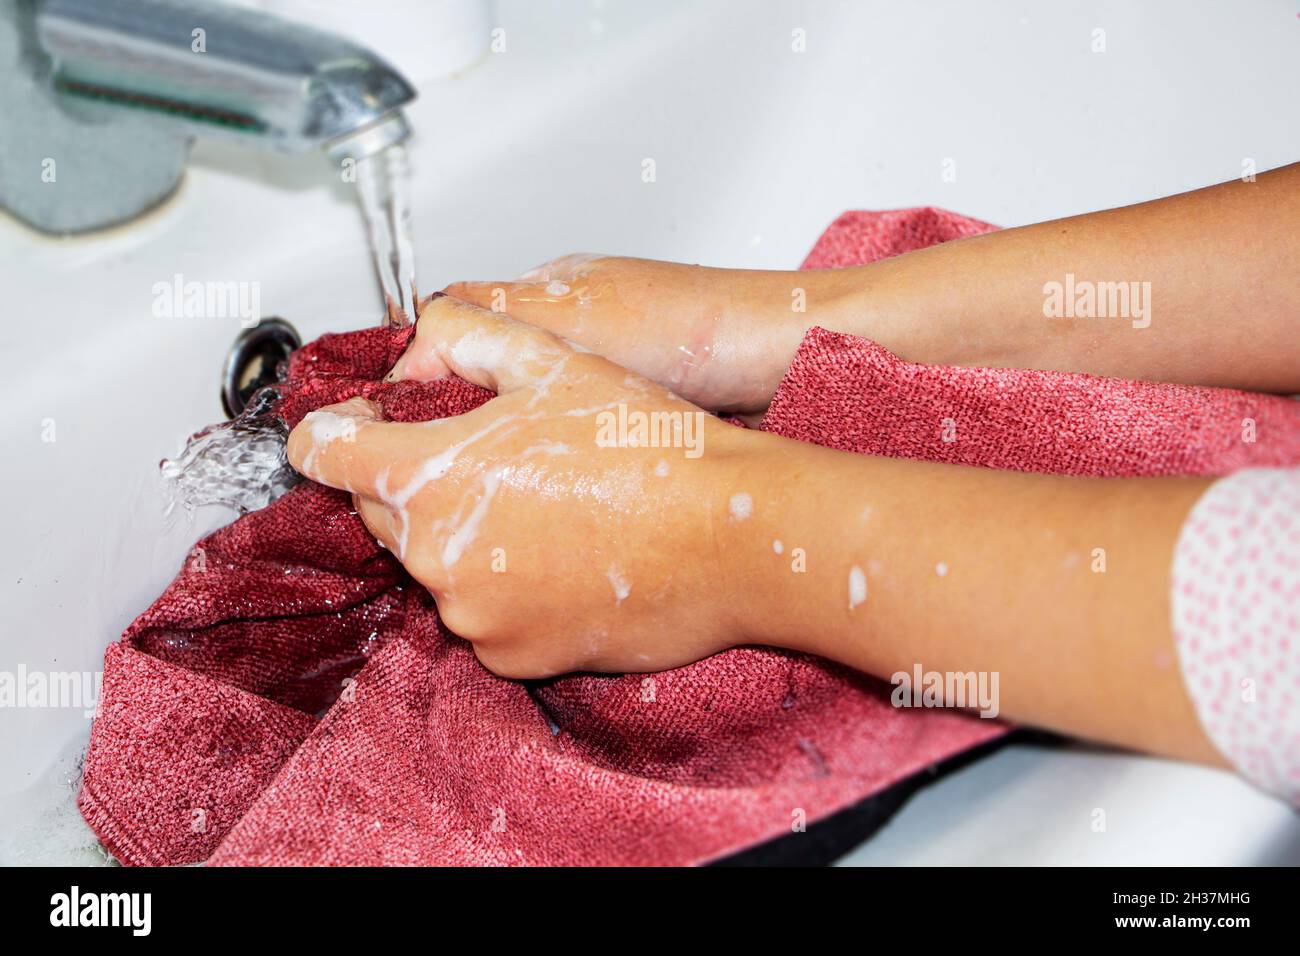 Lavage à la main des objets colorés. Les mains des femmes se lavent et essorent les objets colorés dans de l'eau savonneuse. Banque D'Images